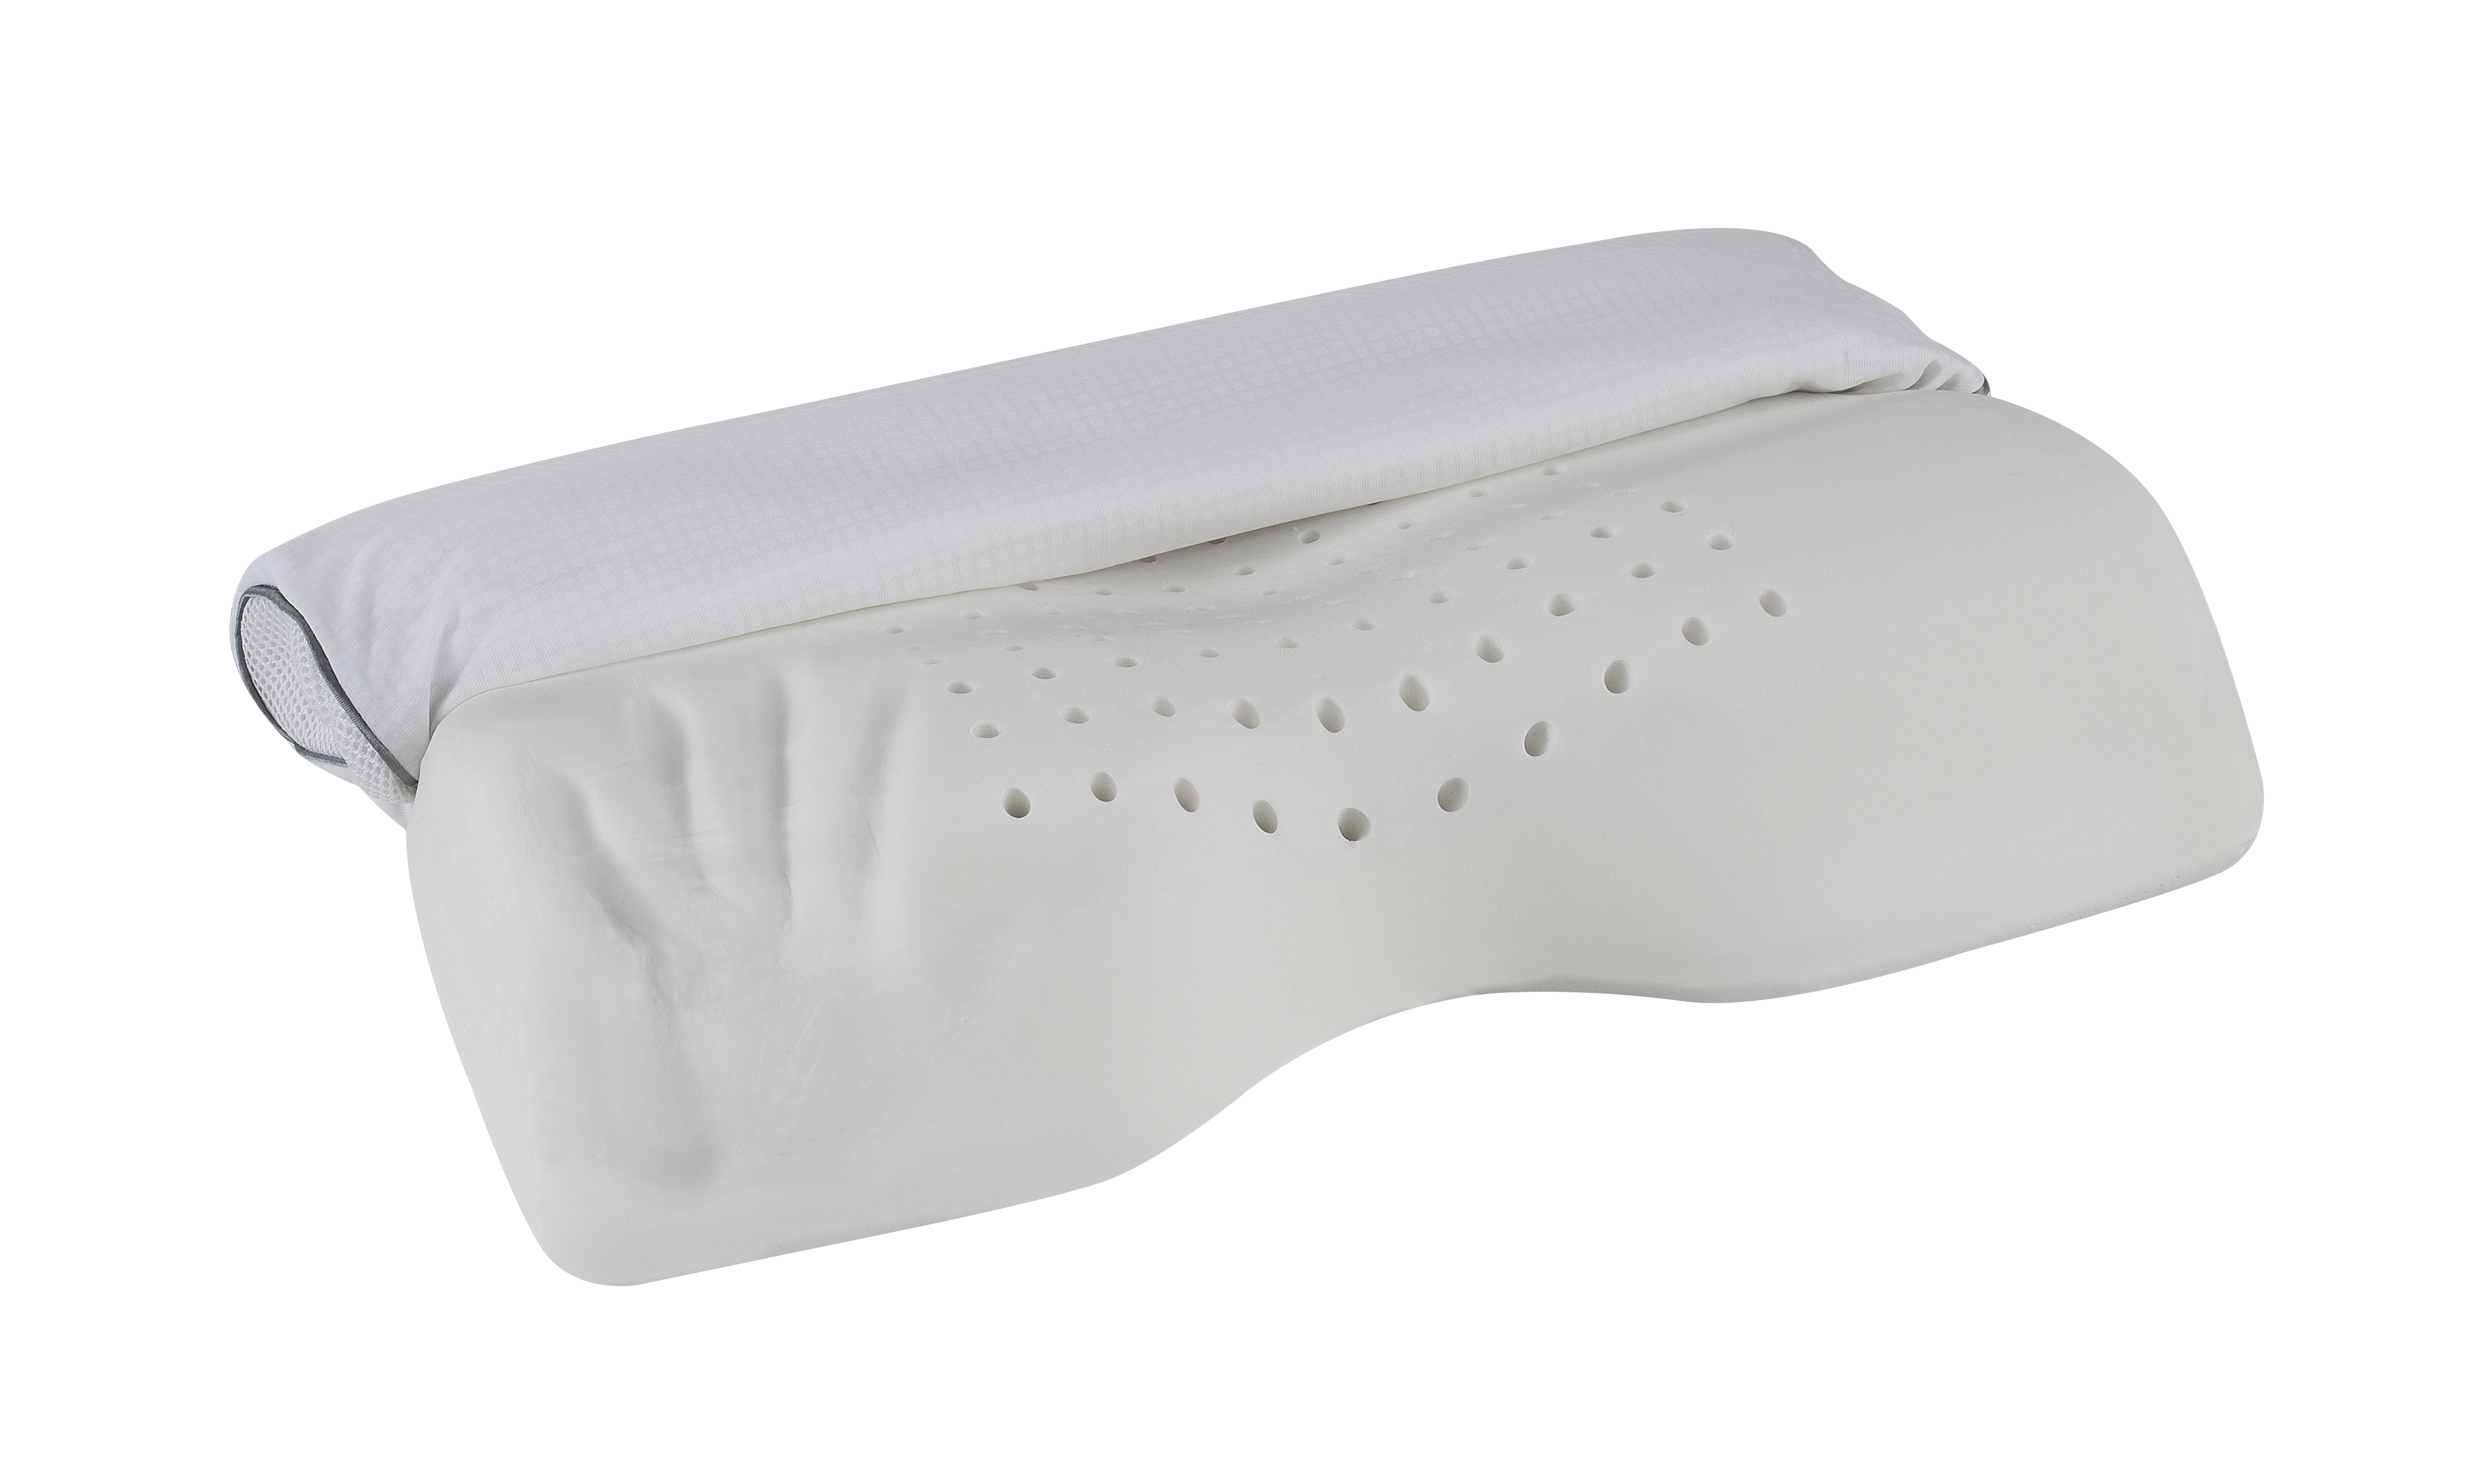 Жесткие подушки для сна. Magniflex Deluxe подушка. Подушка Magniflex Relaxsan. Ортопедическая подушка Фелисити. Ортопедическая подушка комфорт.